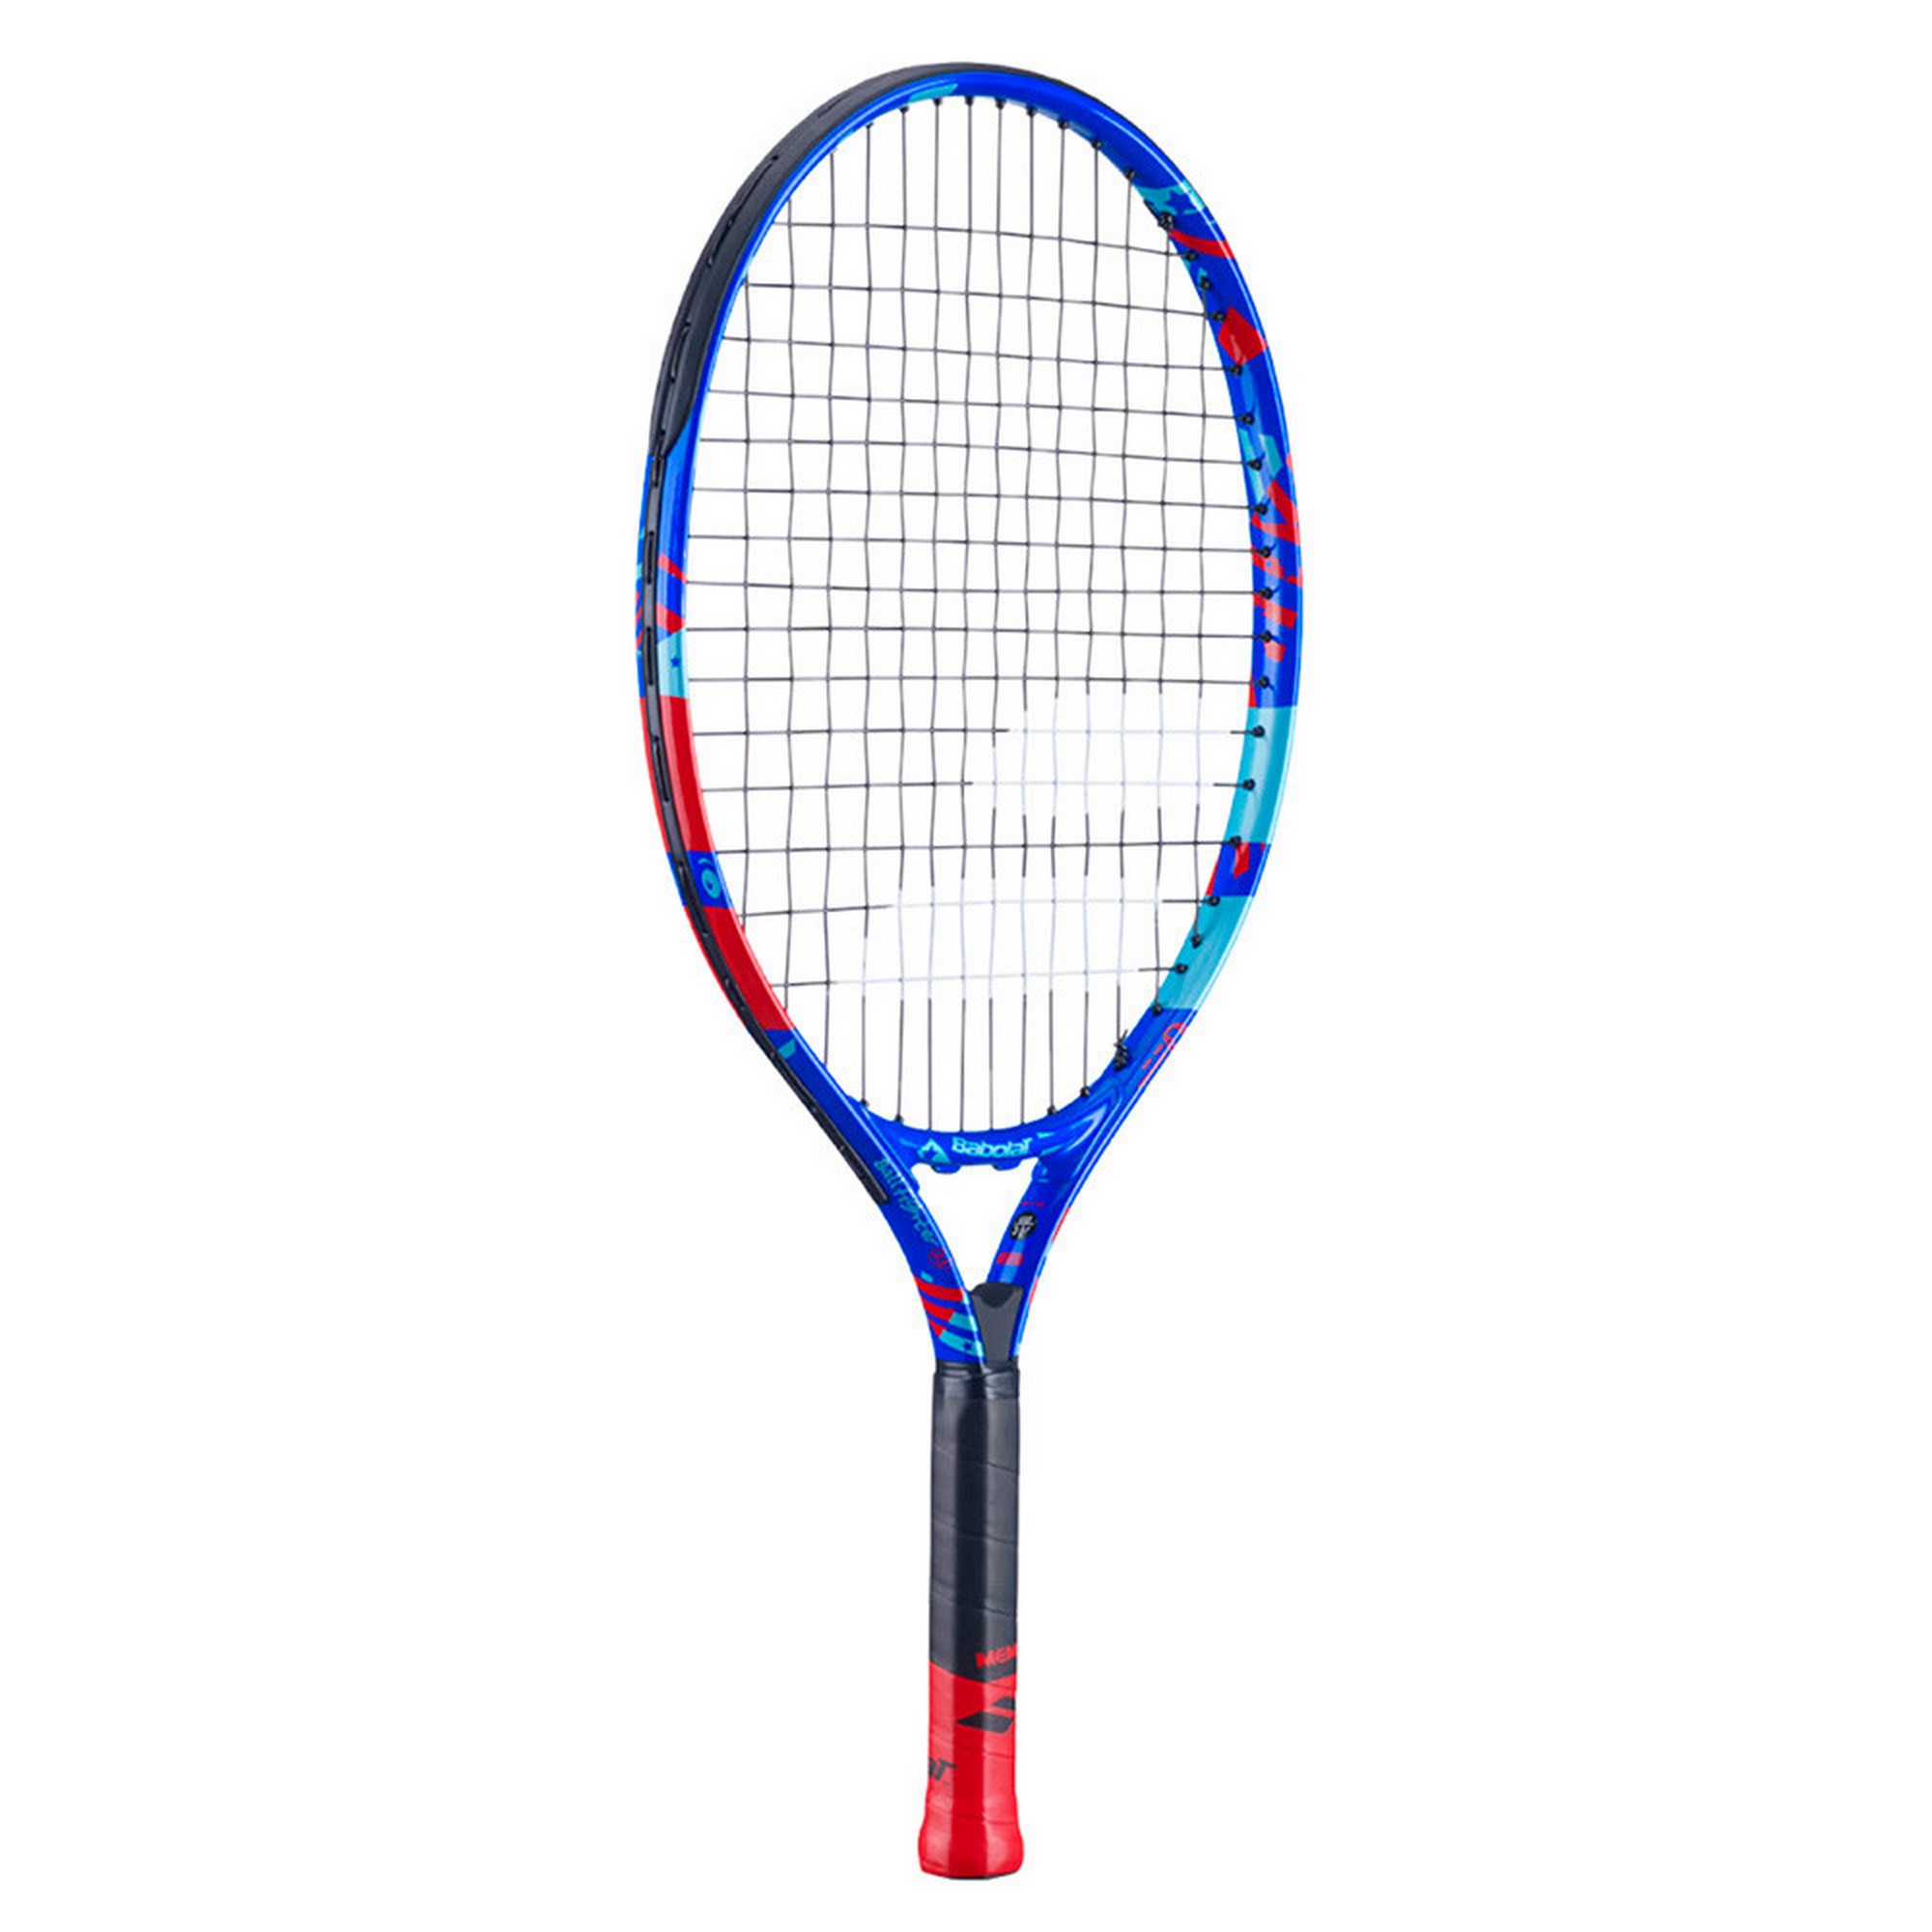 Ракетка для большого тенниса детская Babolat Ballfighter 21 Gr000 140480 сине-красный 2000_2000